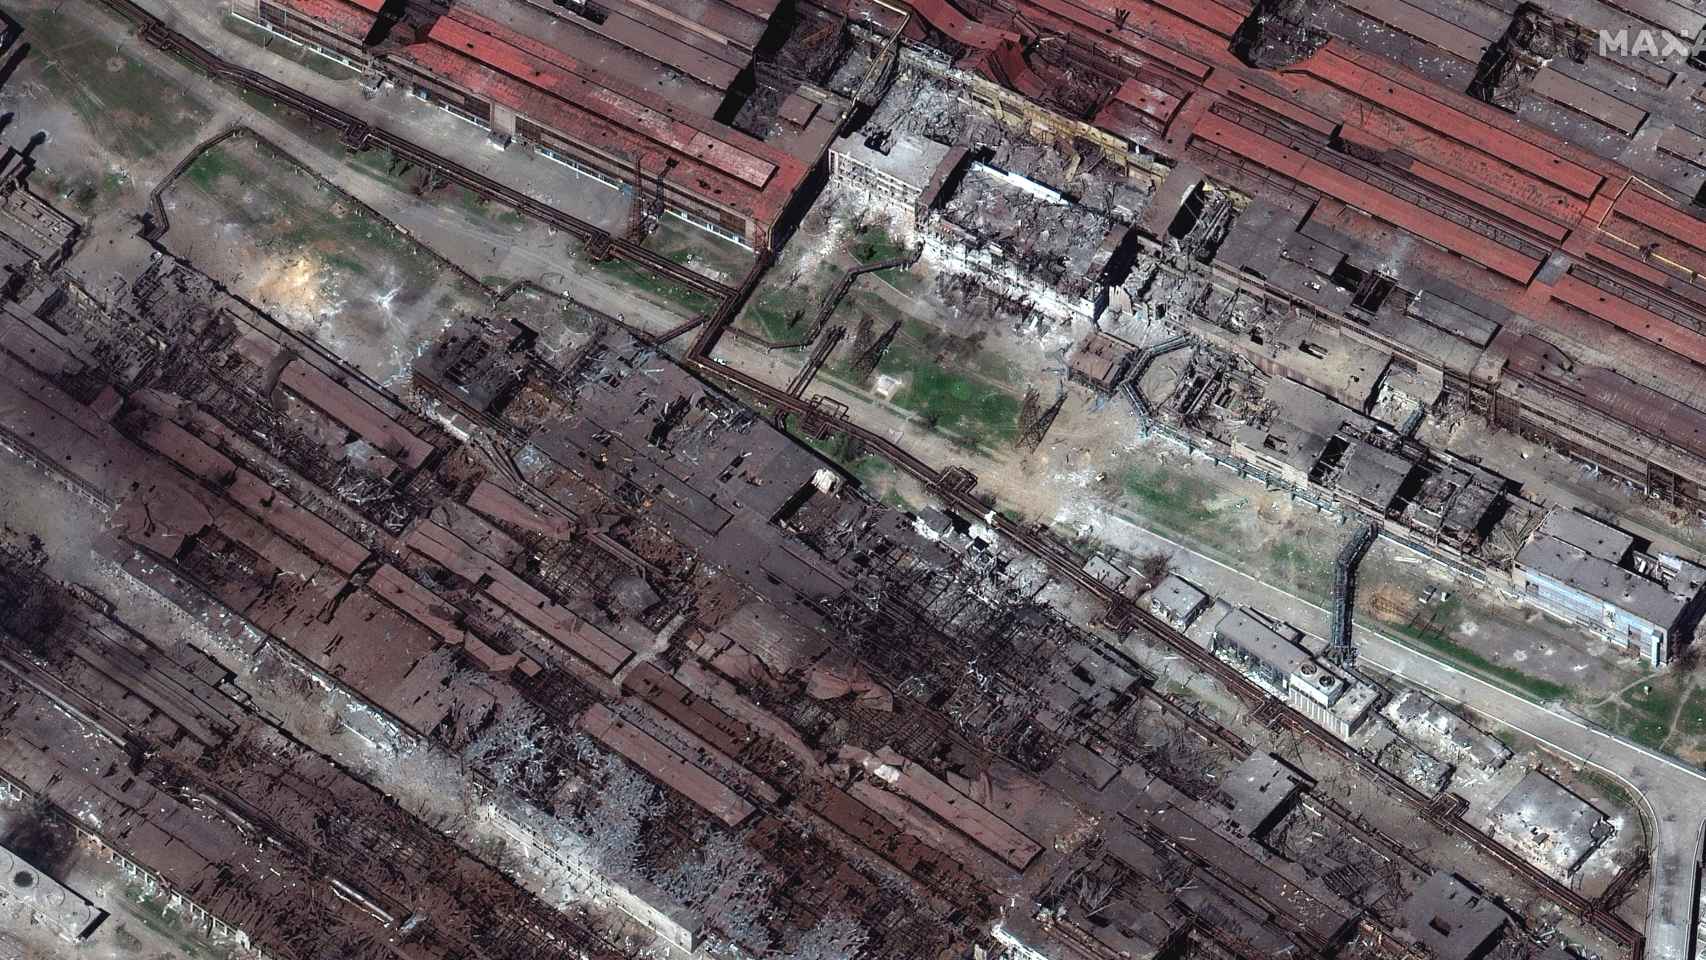 Imagen satélite de la planta de Azovstal (Mariúpol), en la que se puede ver el destrozo provocado por los bombardeos rusos.